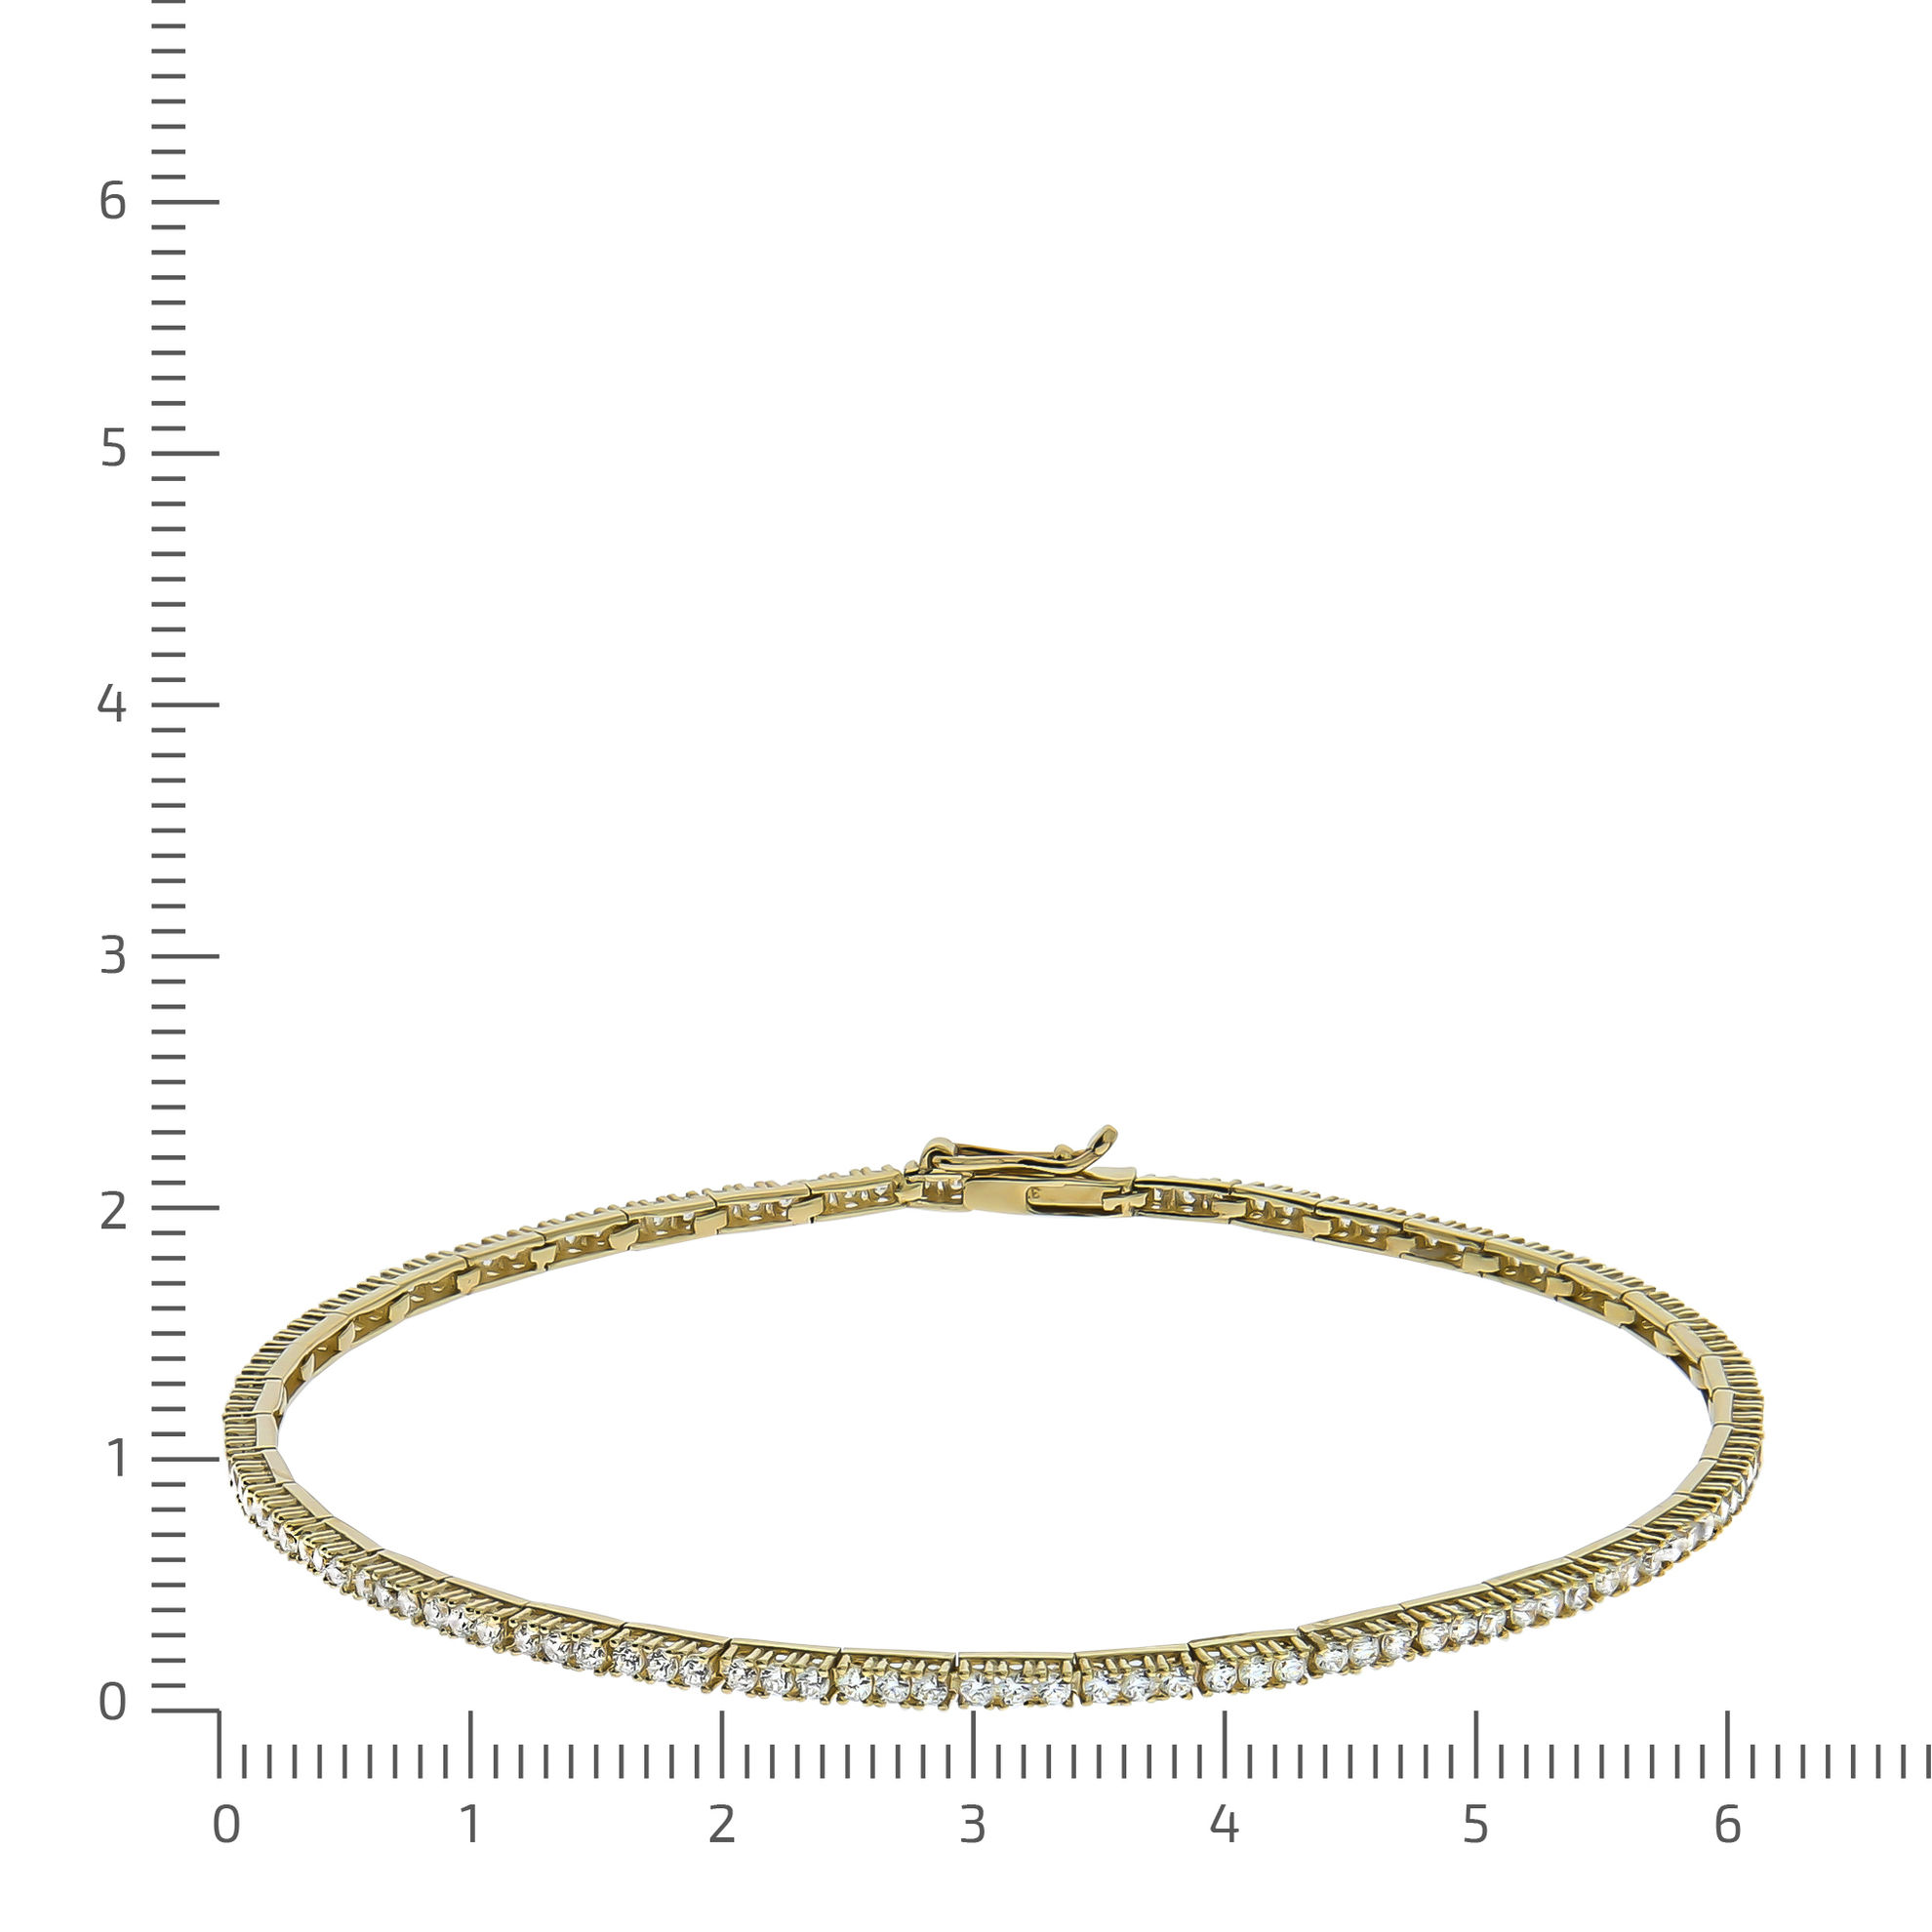 Celesta Gold Armband 375 - Gold Zirkonia 18cm Glänzend | Weltbild.de